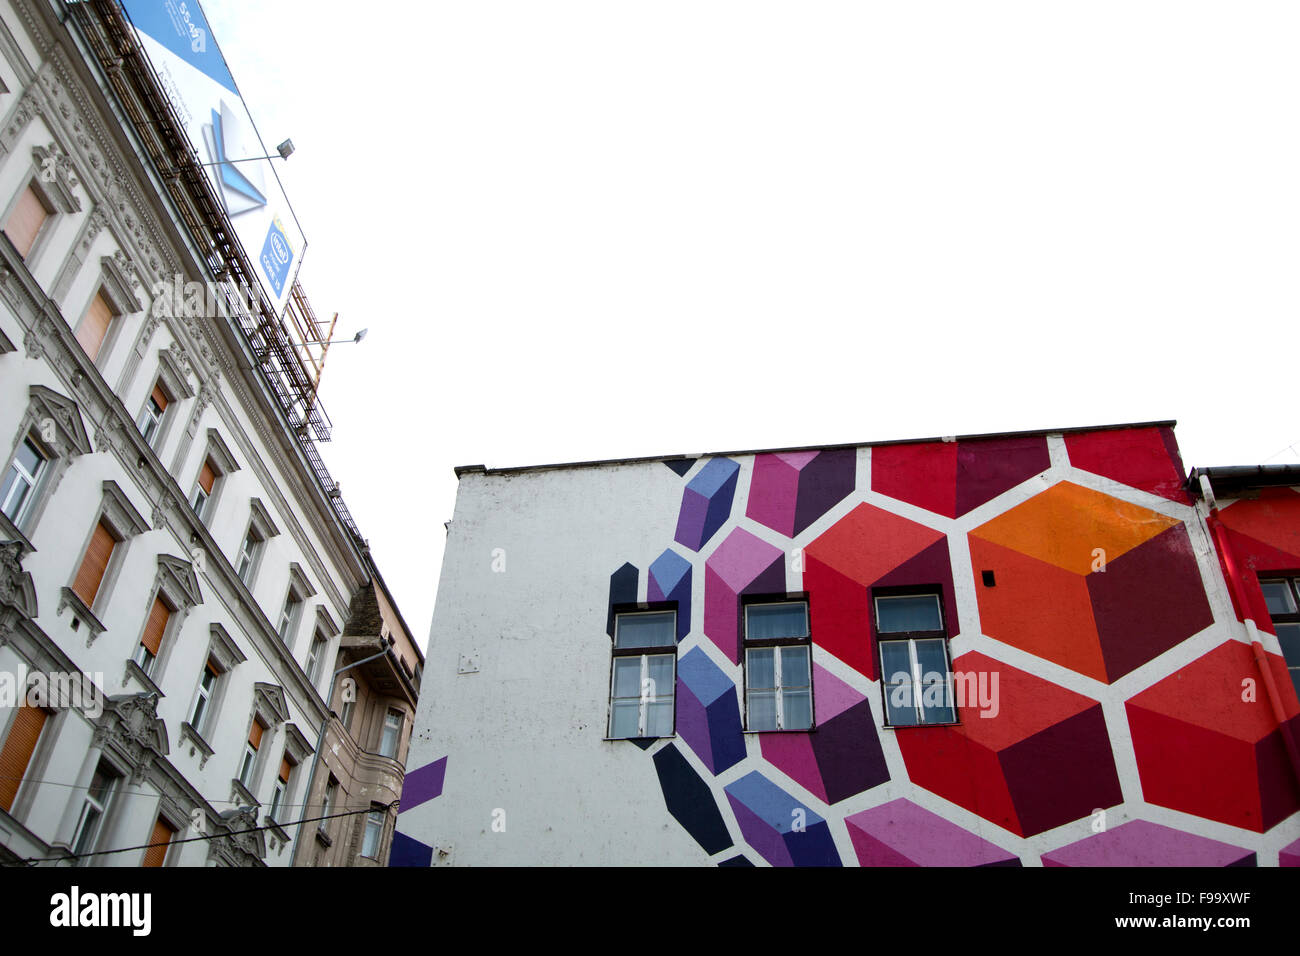 Art colorés peints sur un bâtiment avec un ciel couvert Banque D'Images